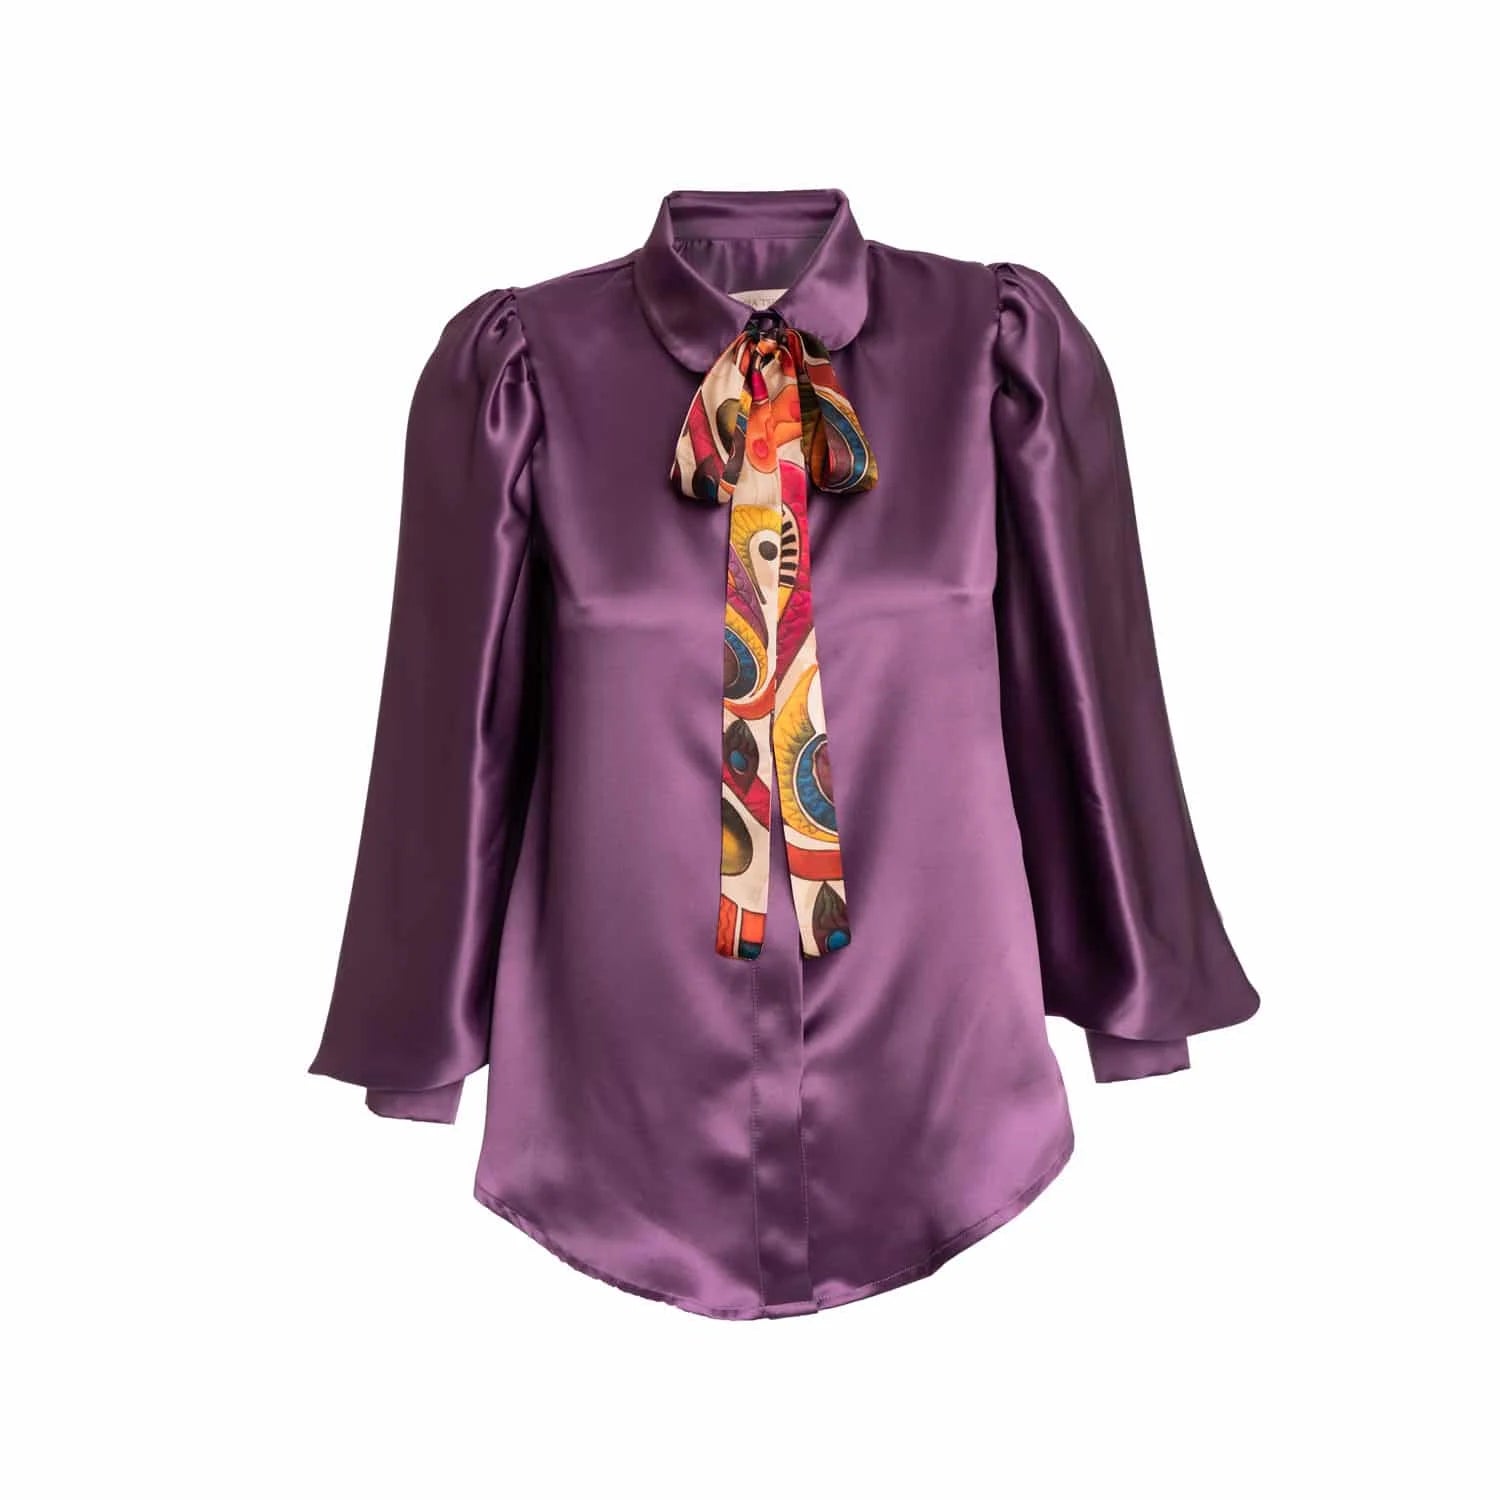 Violet silk blouse - Blouse